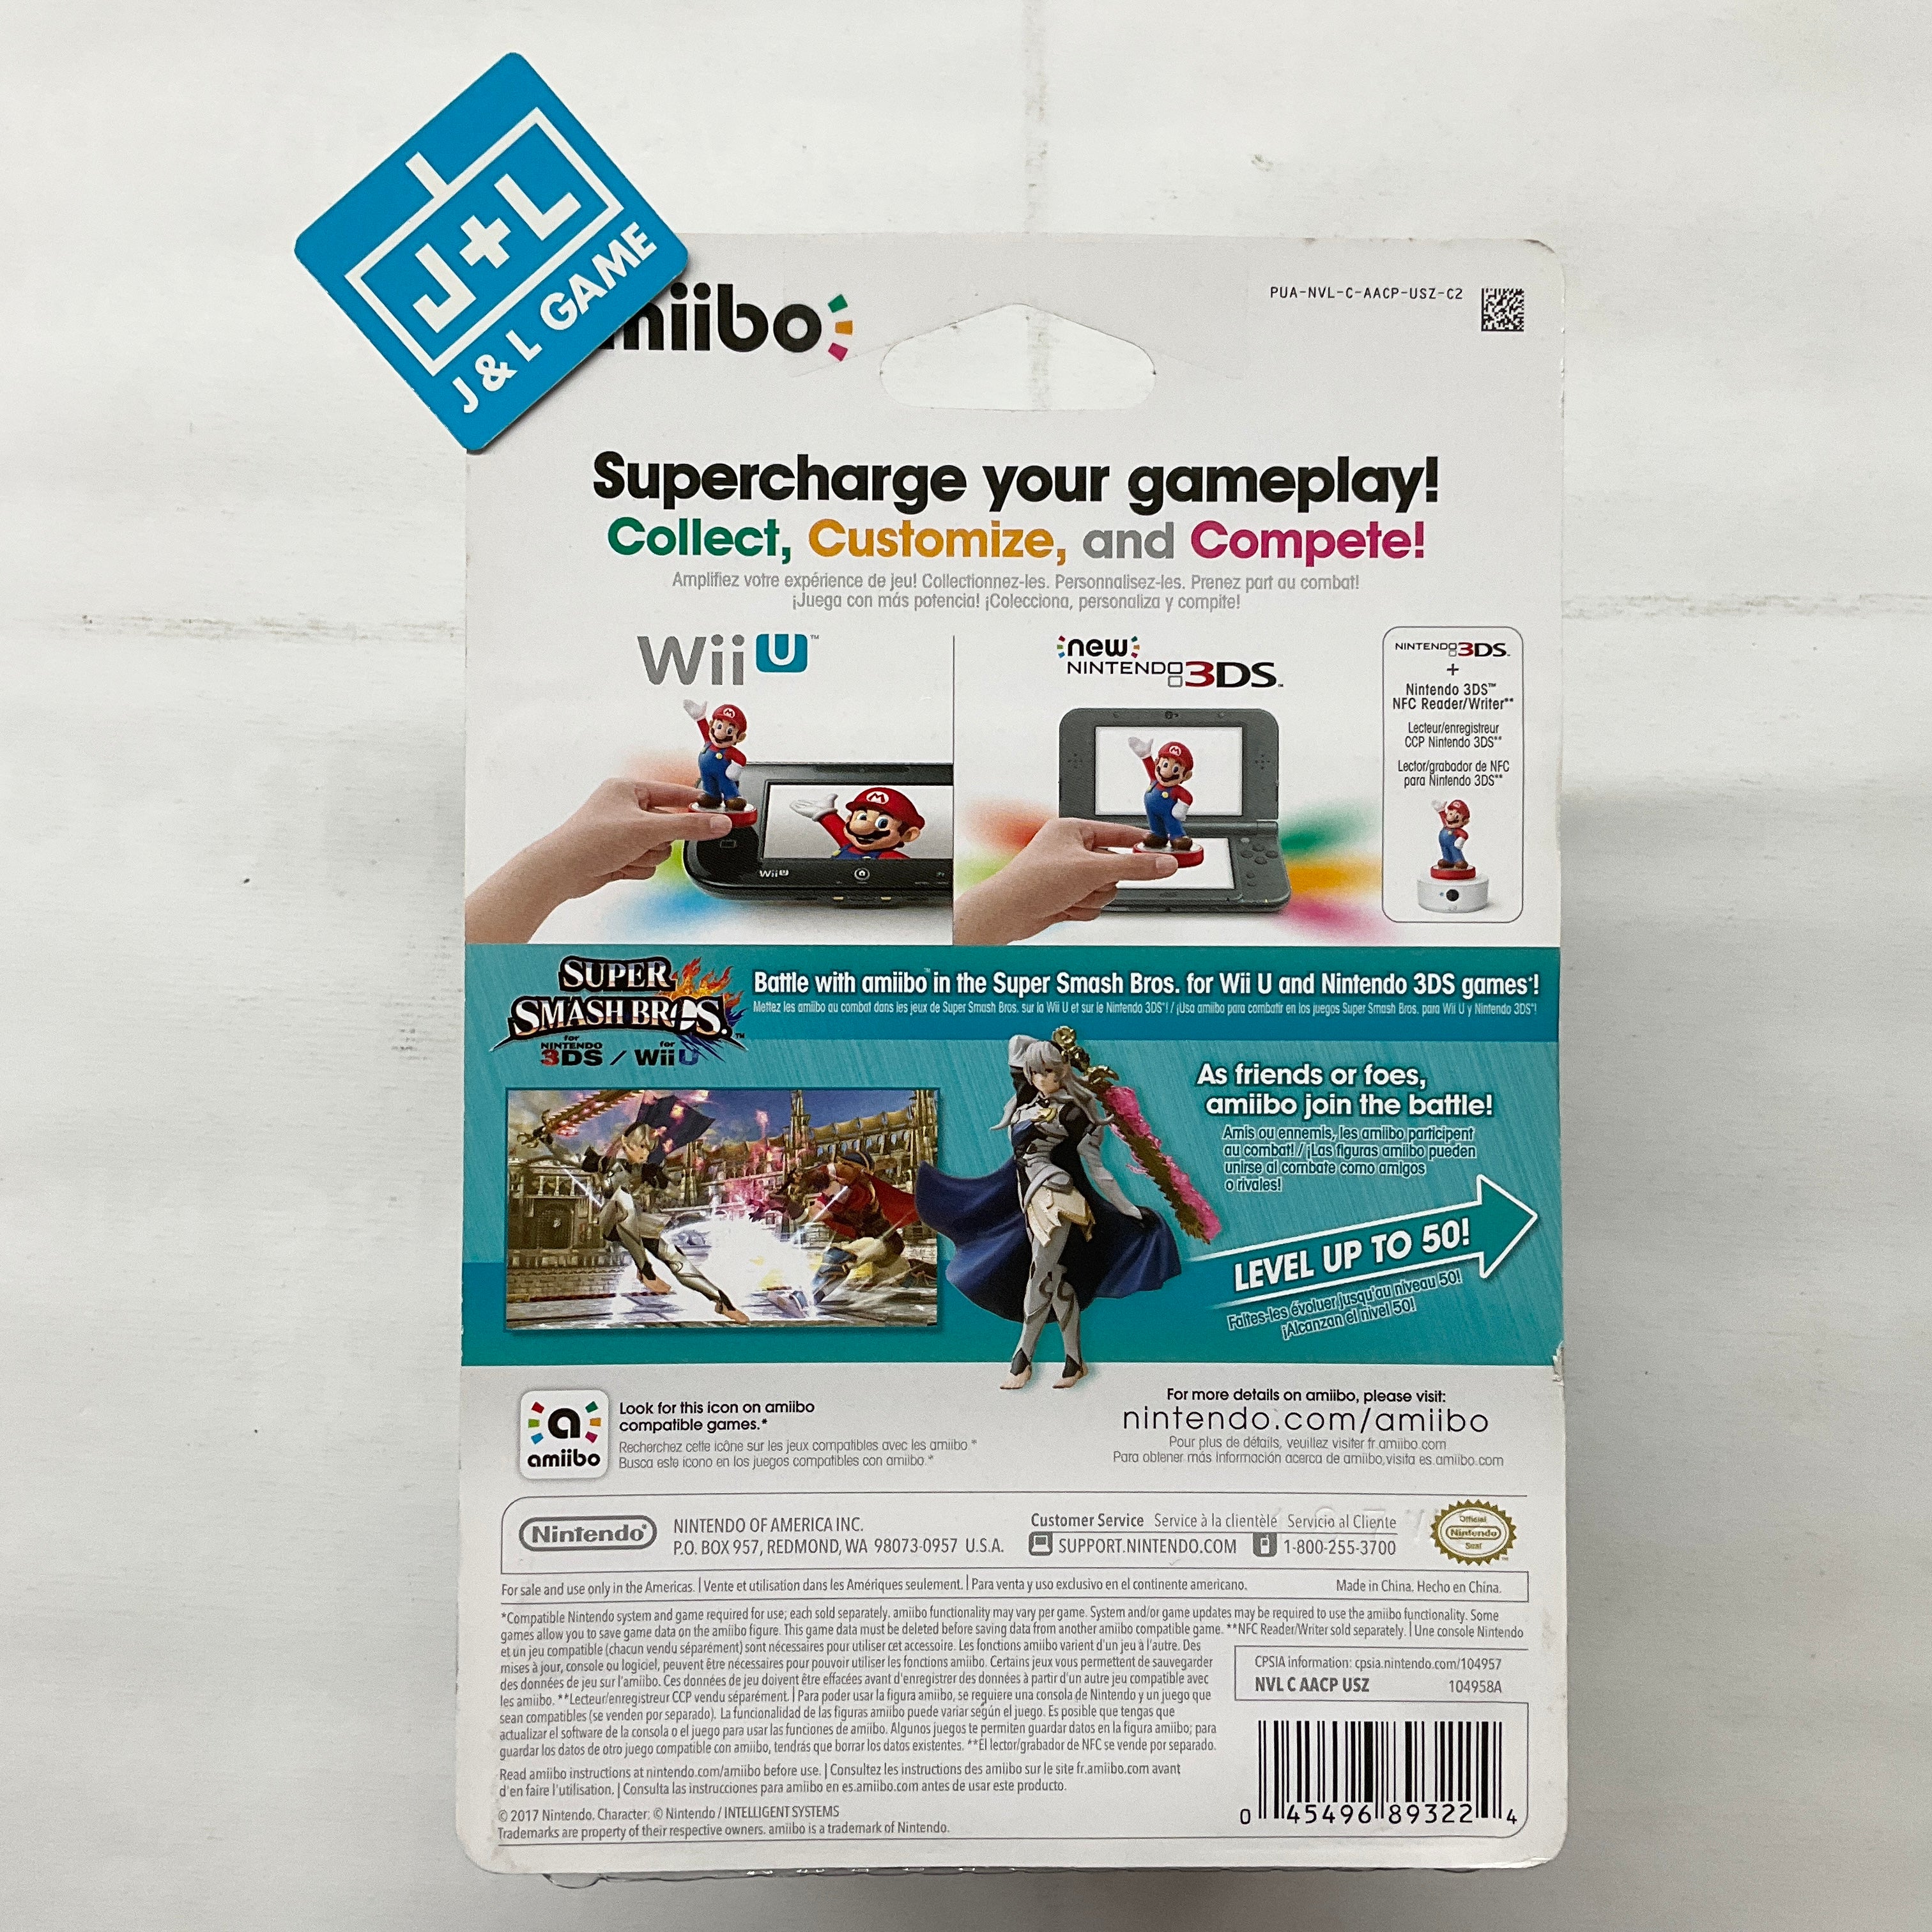 Corrin Player 2 (Super Smash Bros. series) - Nintendo Amiibo Amiibo Nintendo   